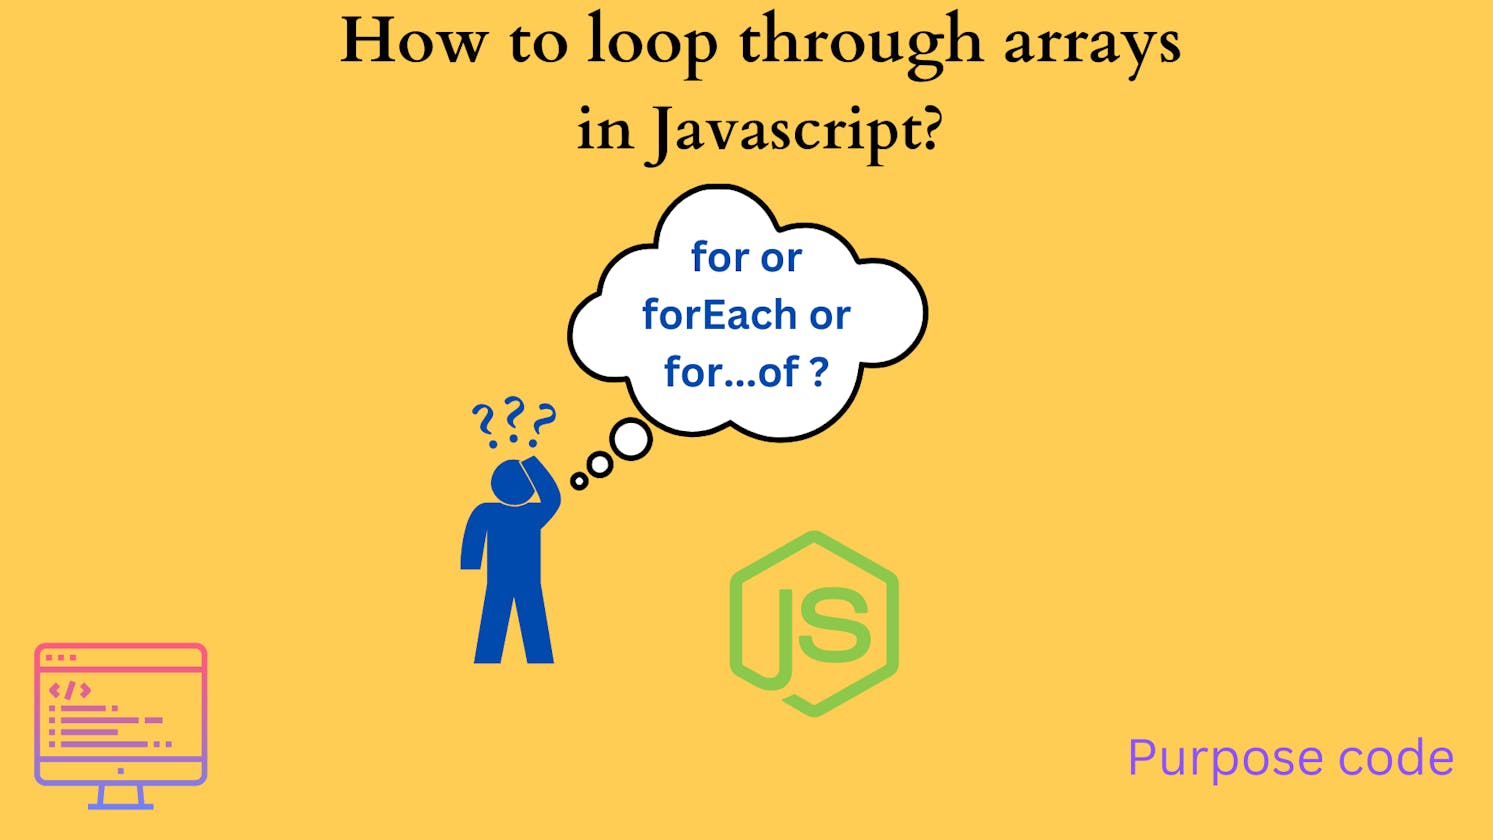 Loop through arrays in Javascript